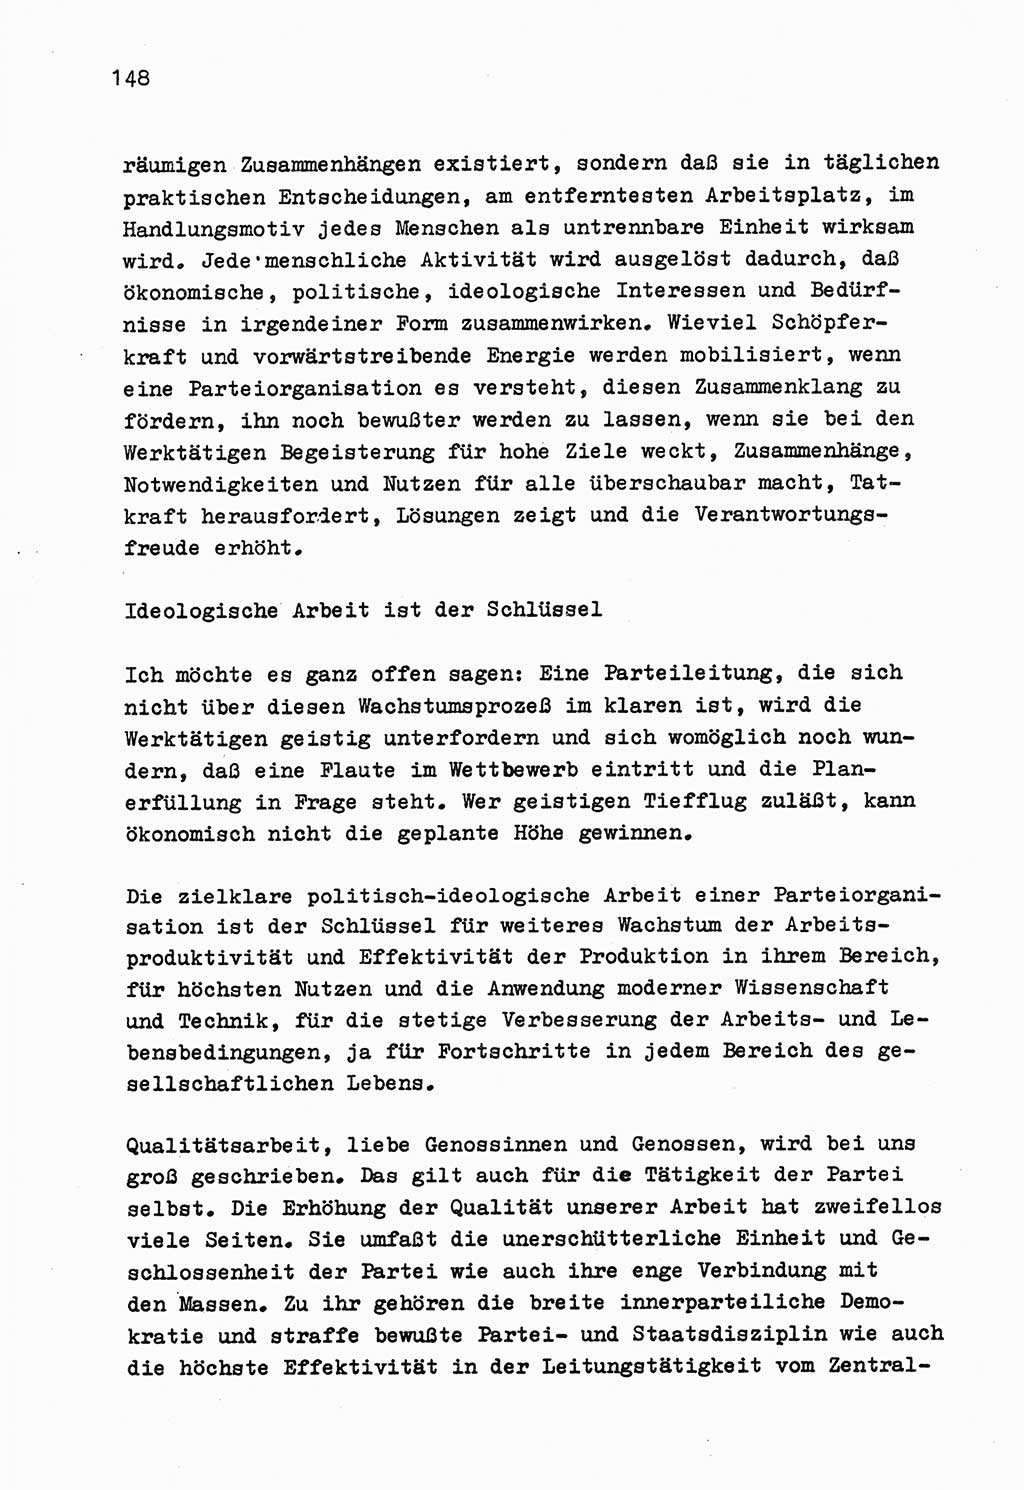 Zu Fragen der Parteiarbeit [Sozialistische Einheitspartei Deutschlands (SED) Deutsche Demokratische Republik (DDR)] 1979, Seite 148 (Fr. PA SED DDR 1979, S. 148)